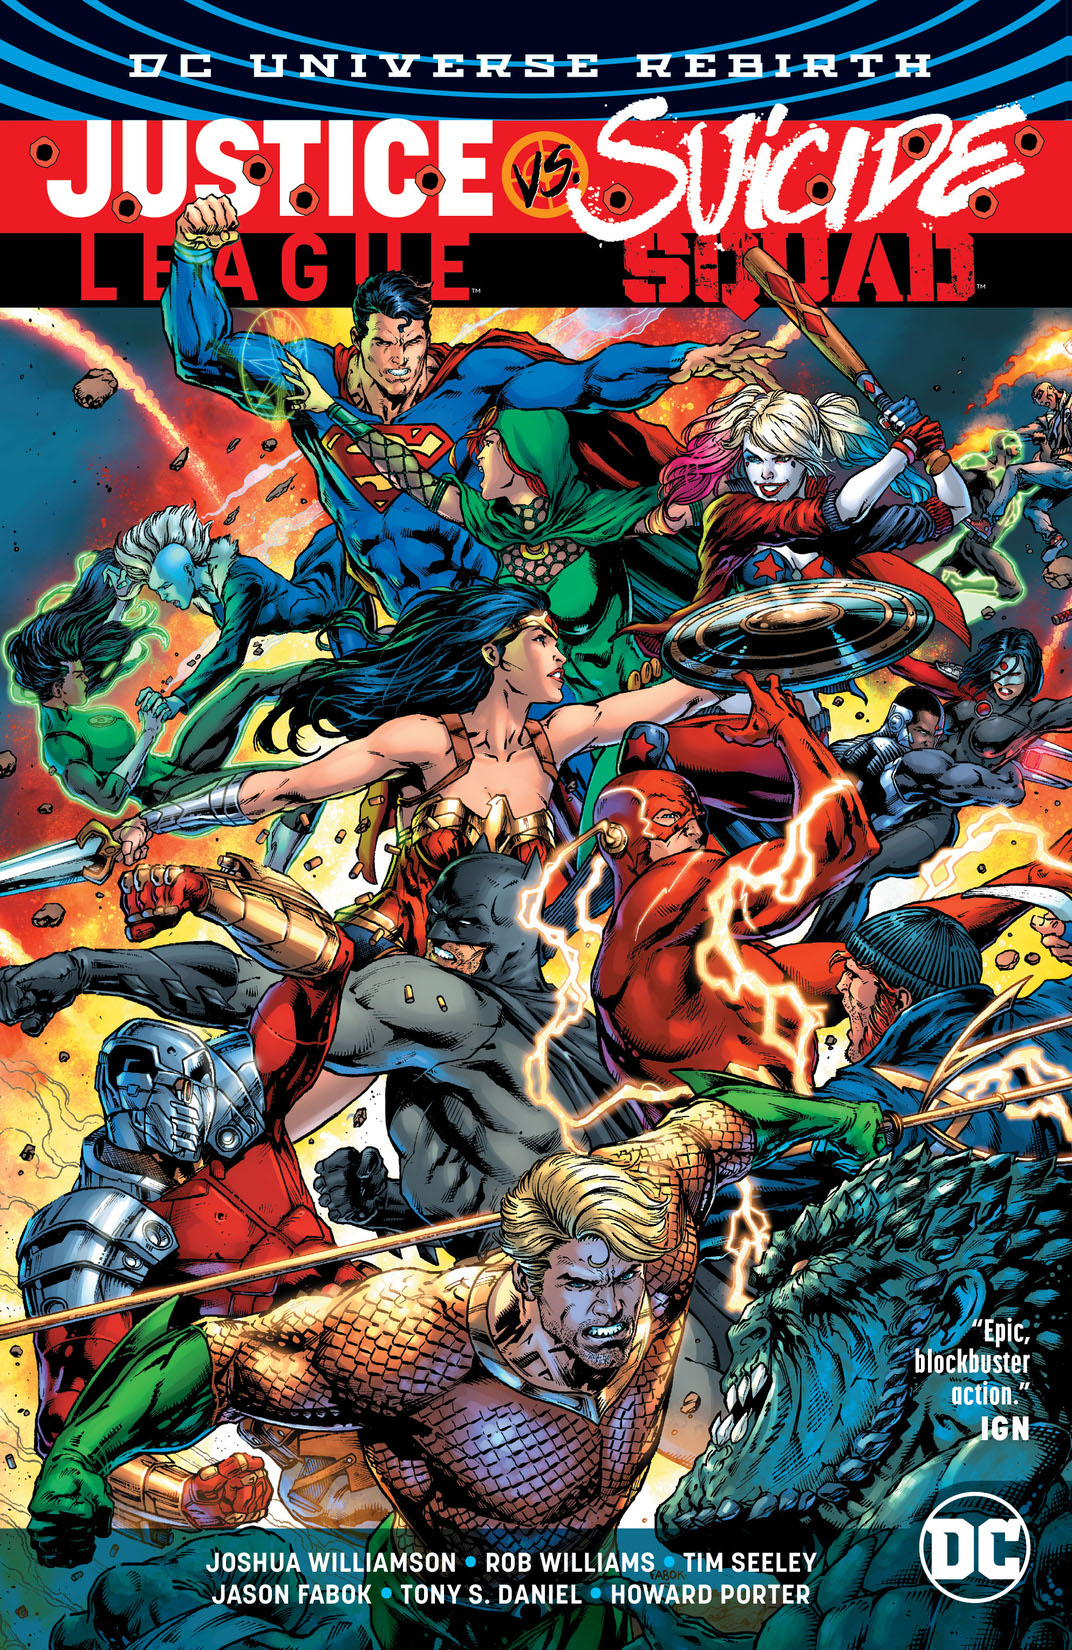 Justice League vs. Suicide Squad preview images